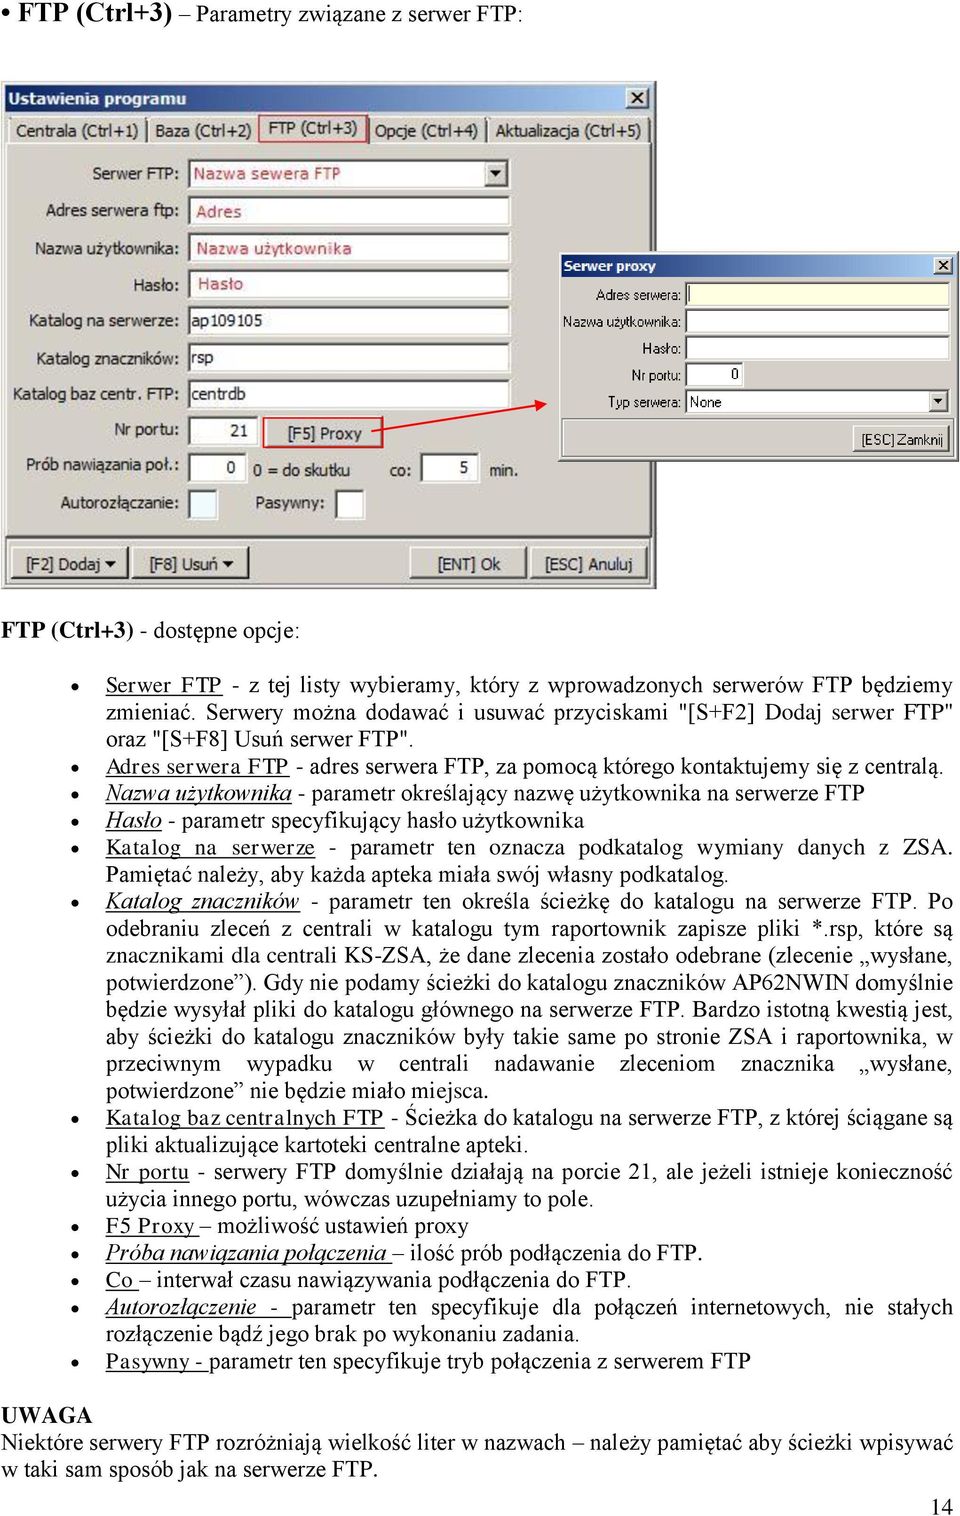 Nazwa użytkownika - parametr określający nazwę użytkownika na serwerze FTP Hasło - parametr specyfikujący hasło użytkownika Katalog na serwerze - parametr ten oznacza podkatalog wymiany danych z ZSA.